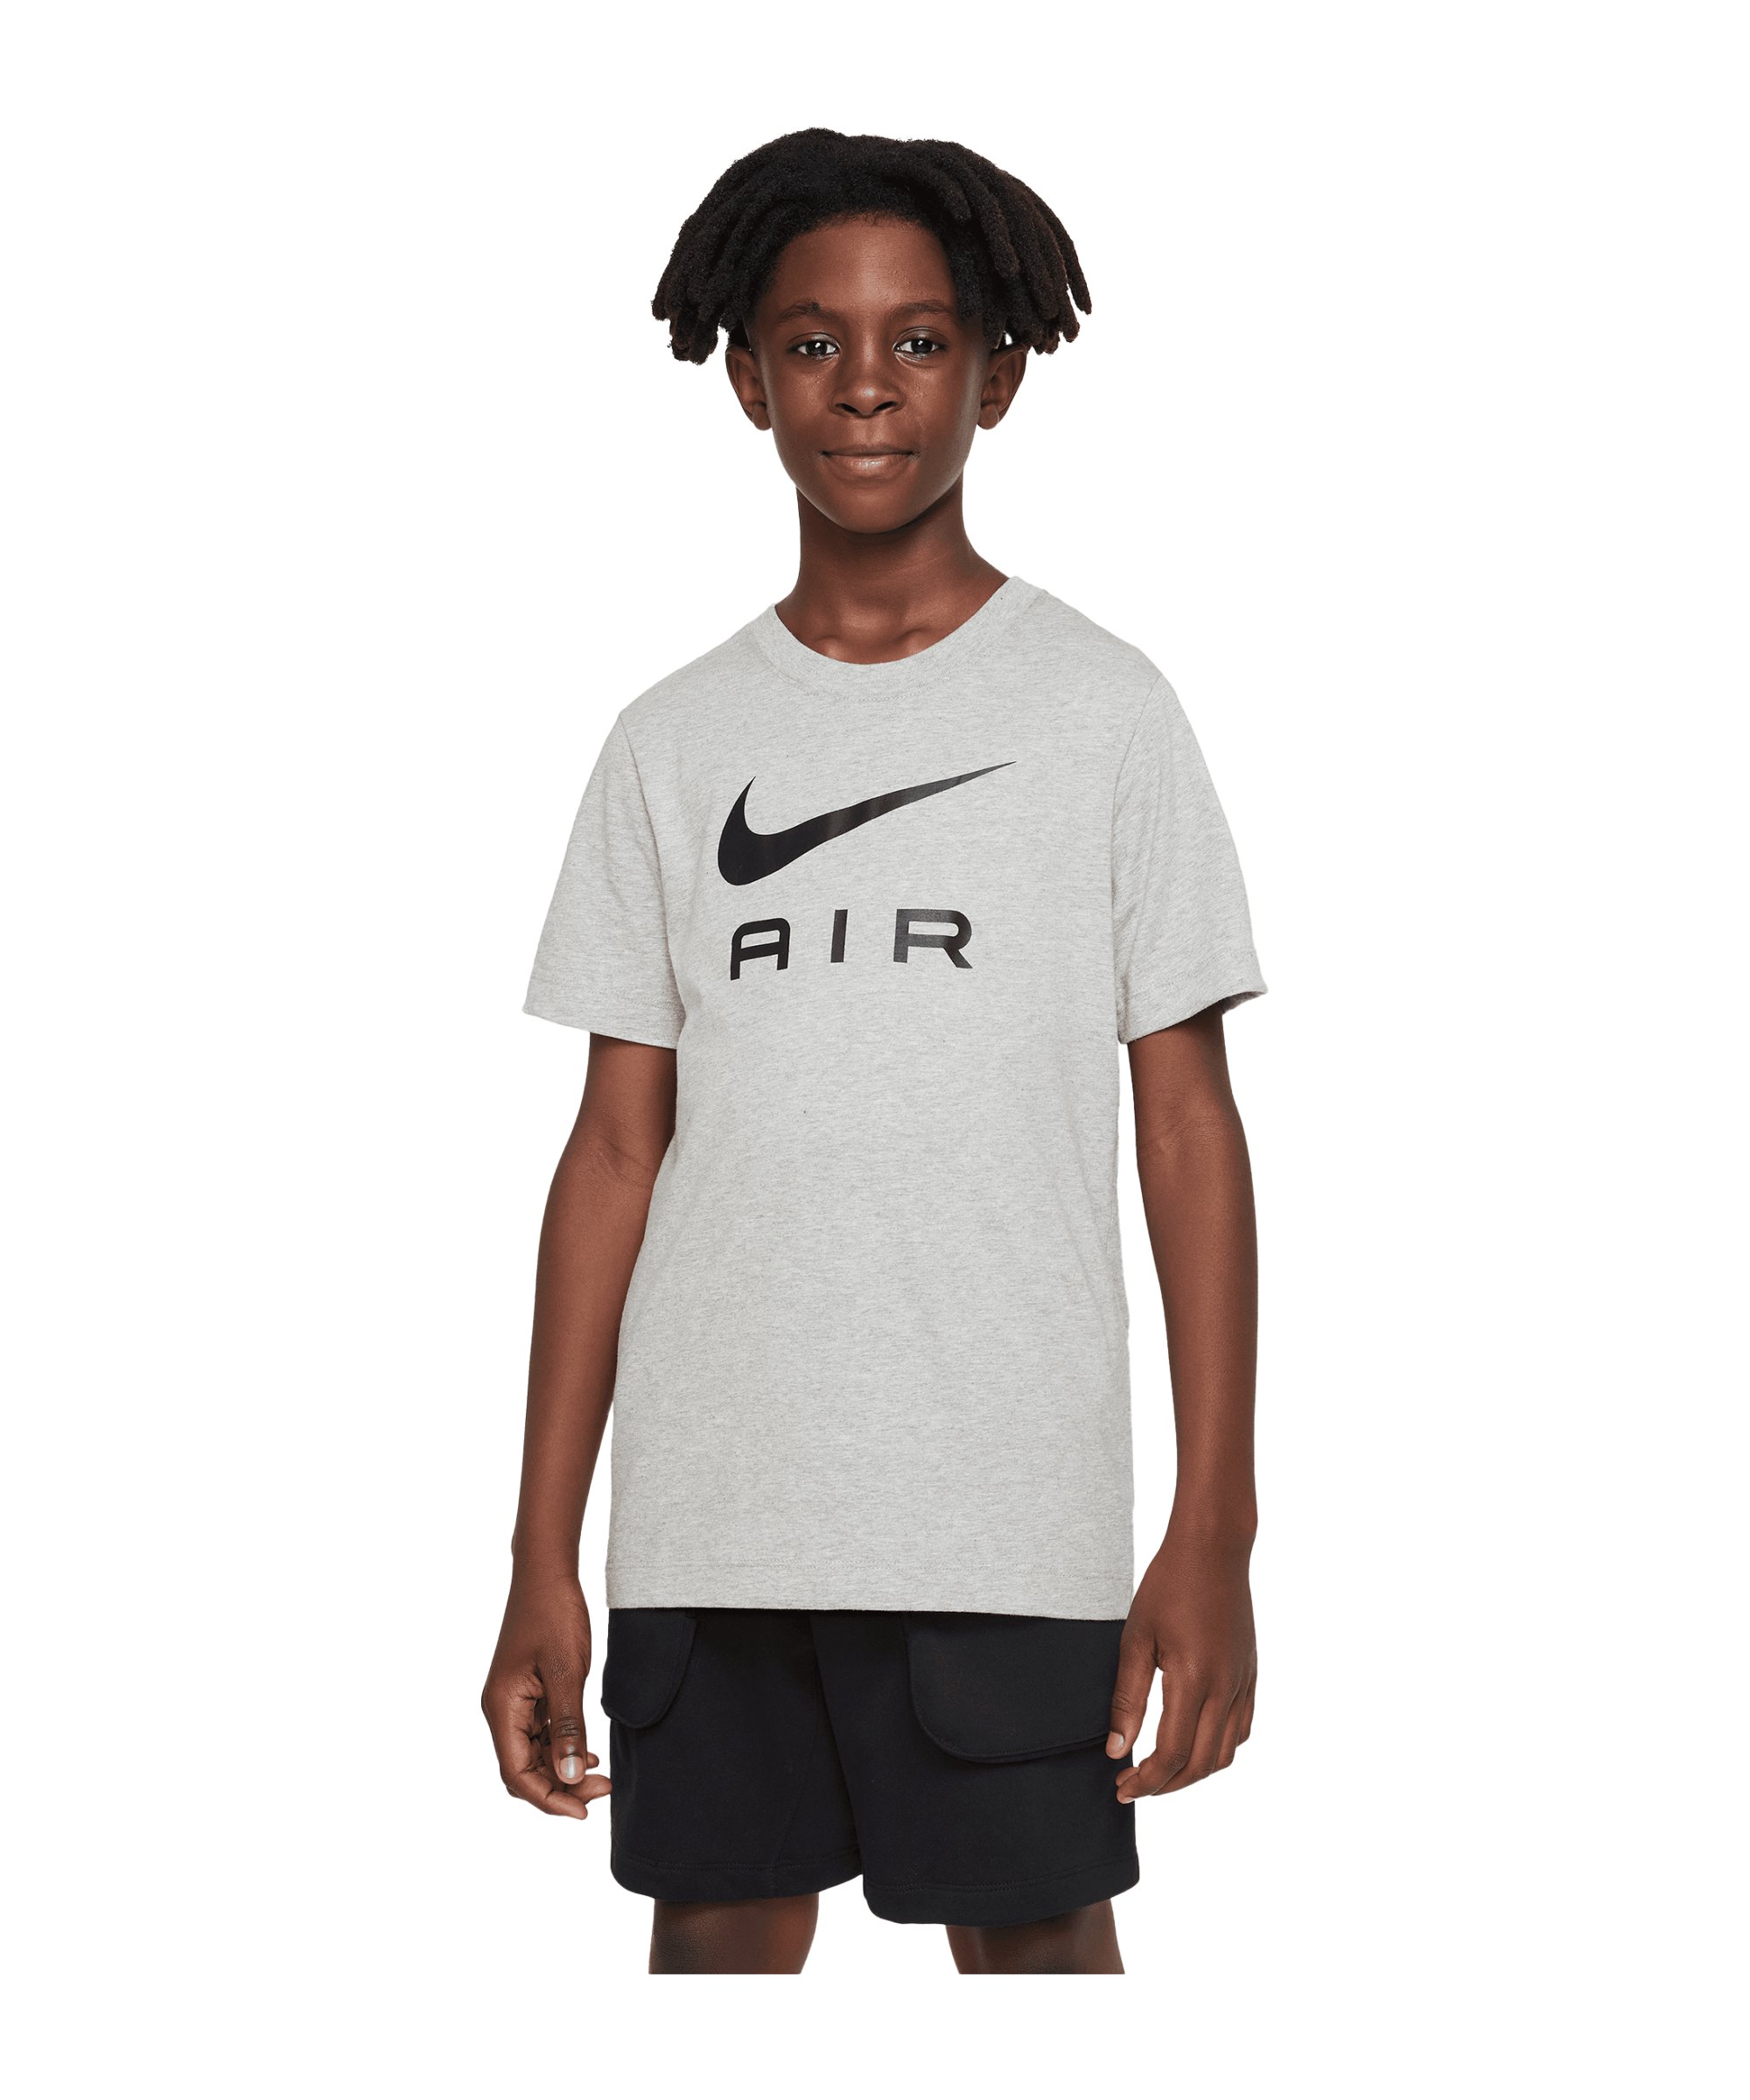 Nike Air T-Shirt Kids Grau F063 - grau